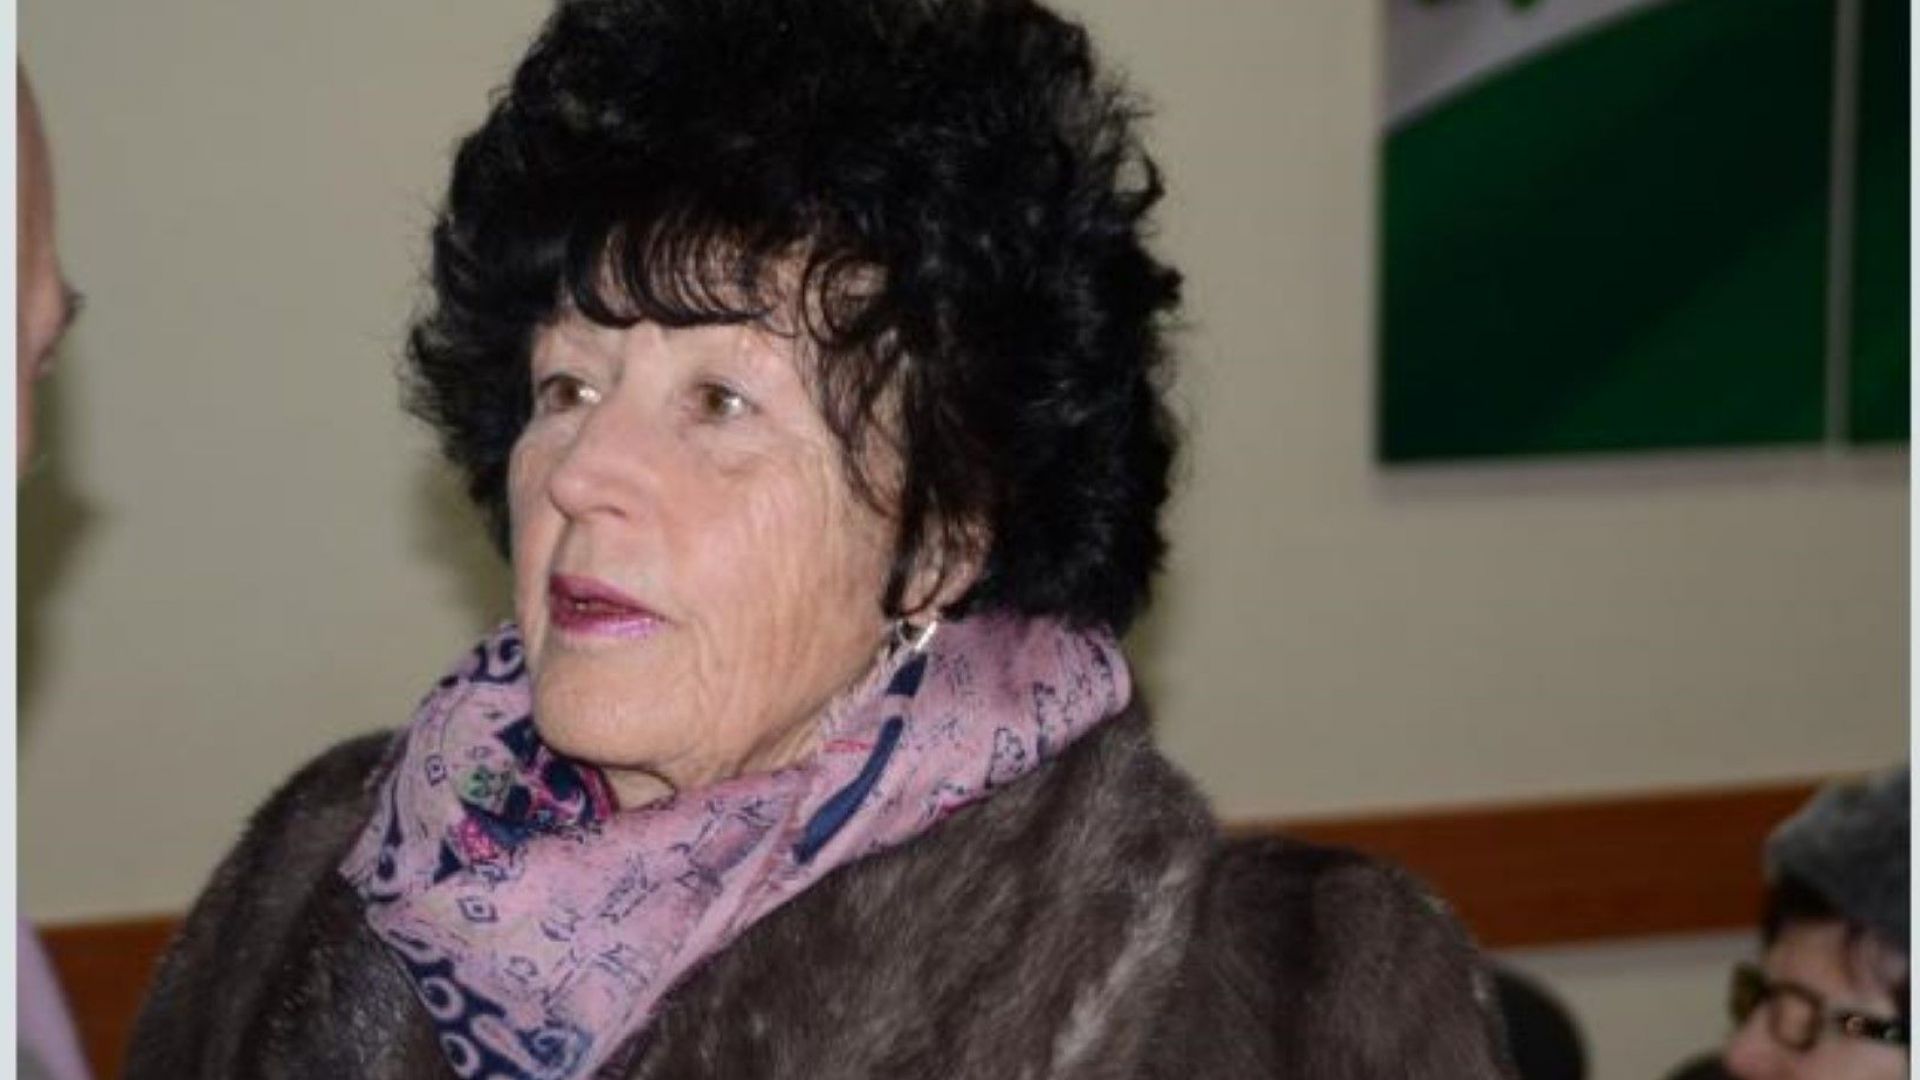 Майката на Банев получи обвинение, но откупи свободата си